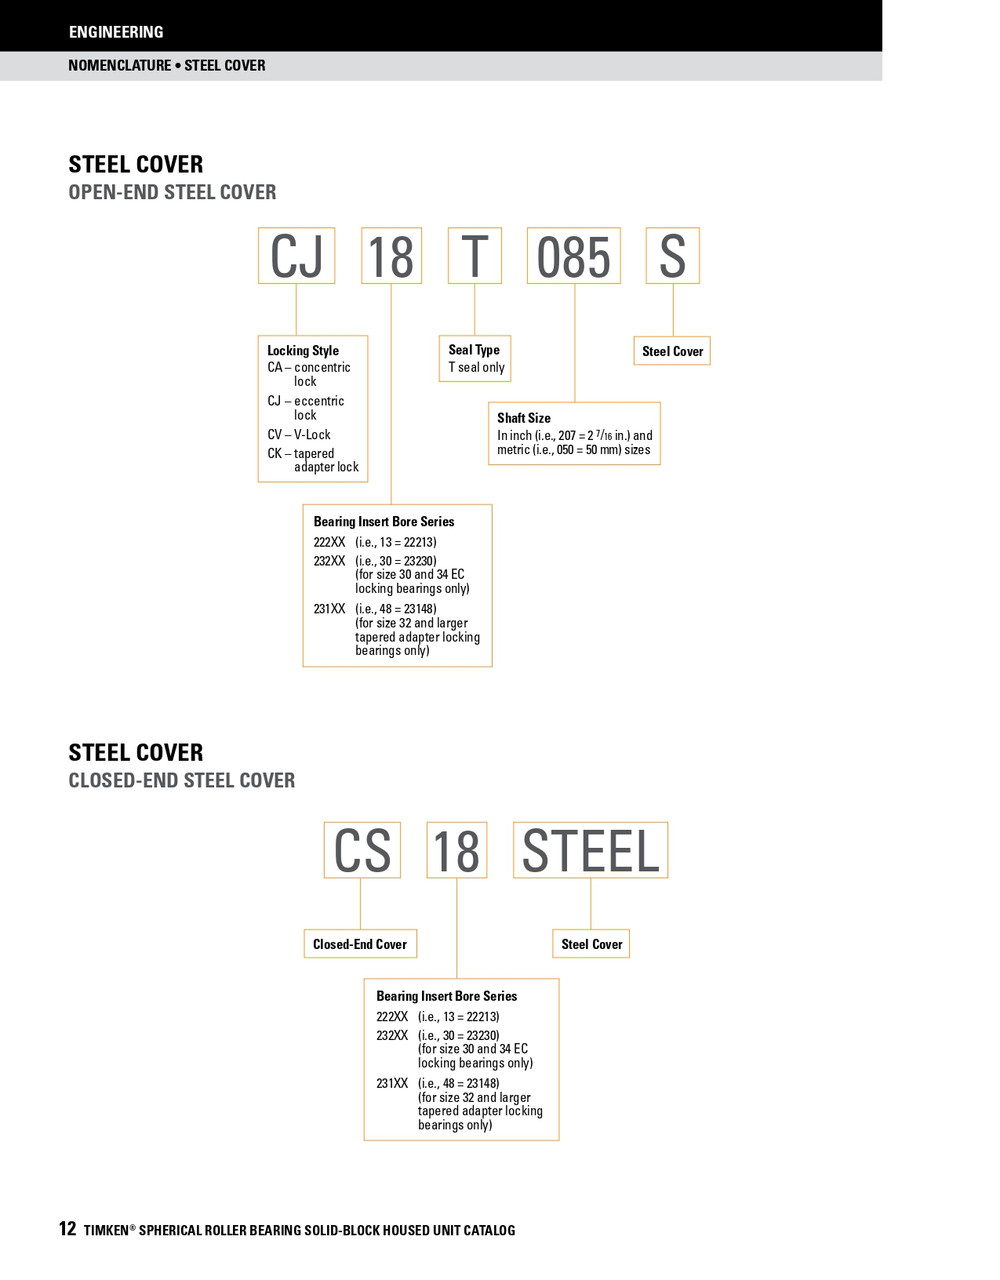 3-7/16" Timken SRB Steel Open End Cover w/Teflon Seal - TA/DV Taper Lock Bushing Type  CK20T307S